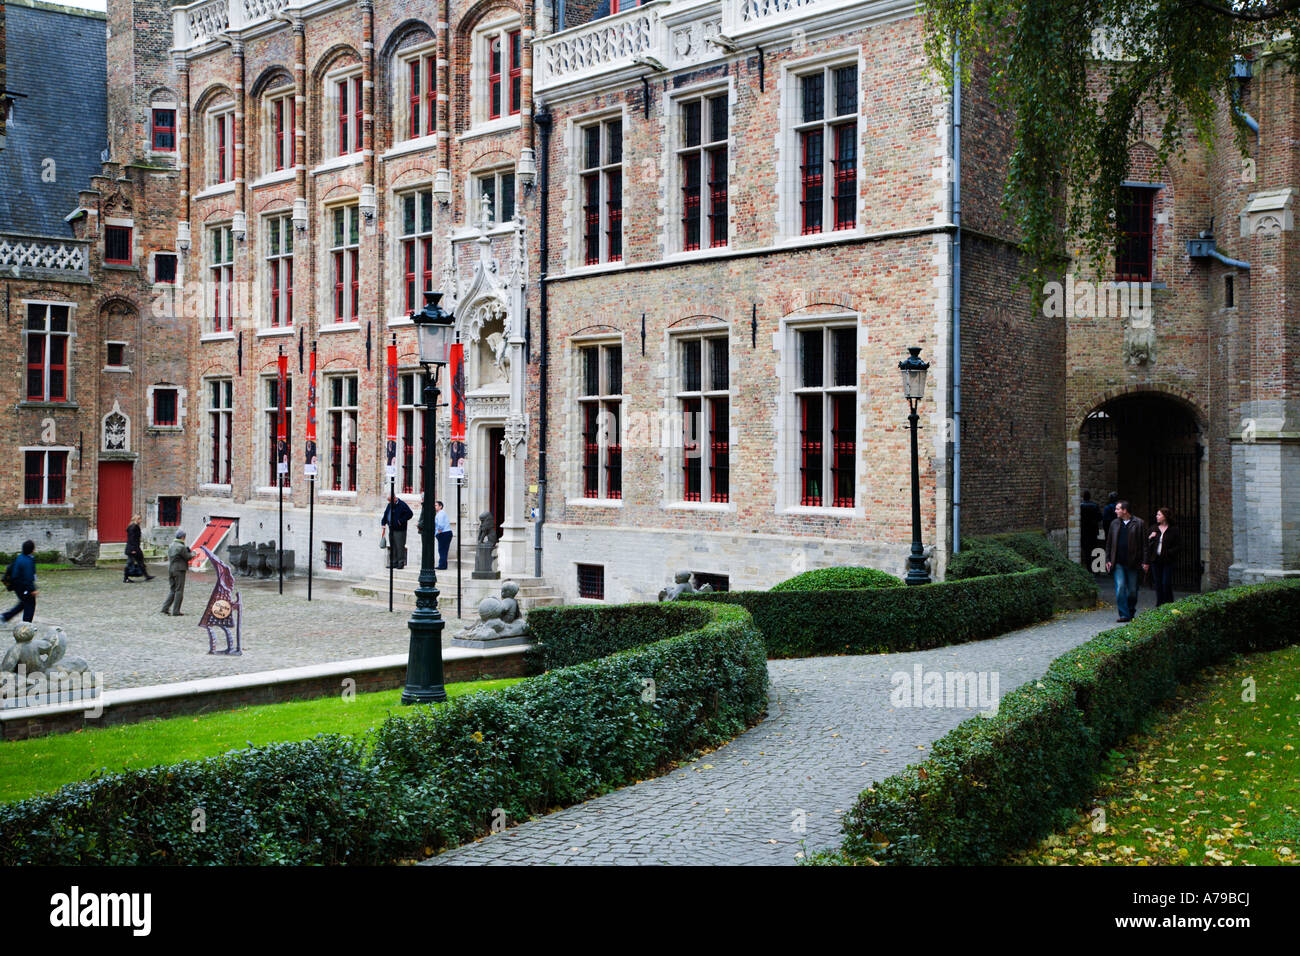 Le musée Gruuthuse d'arts appliqués à Bruges Belgique Banque D'Images